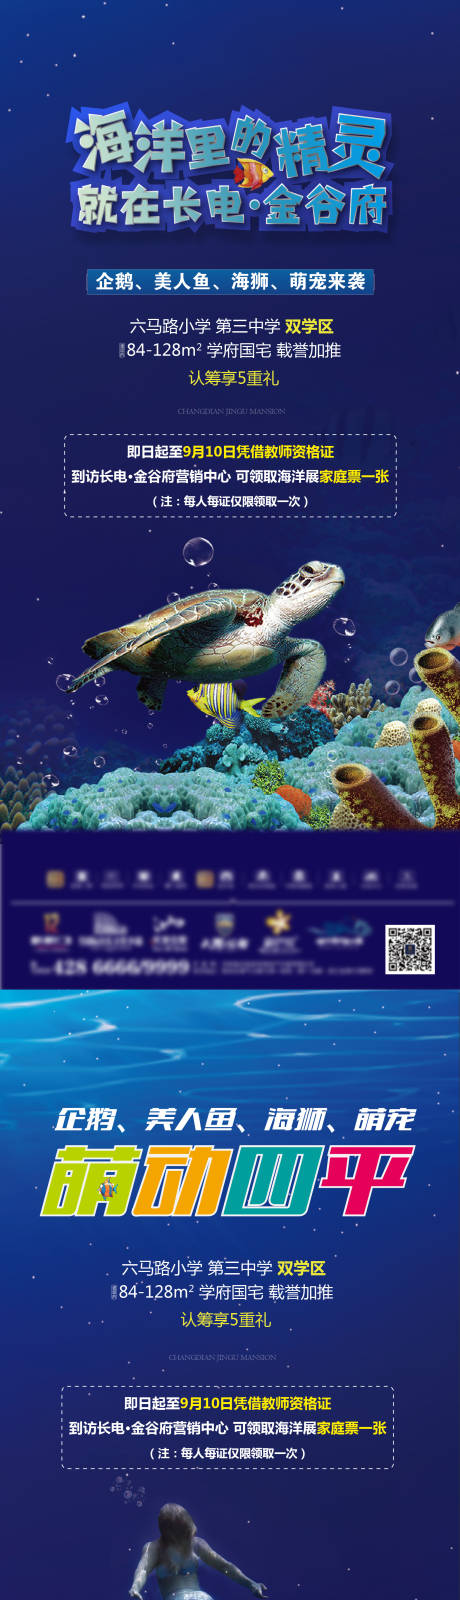 海洋精灵海洋节活动海报